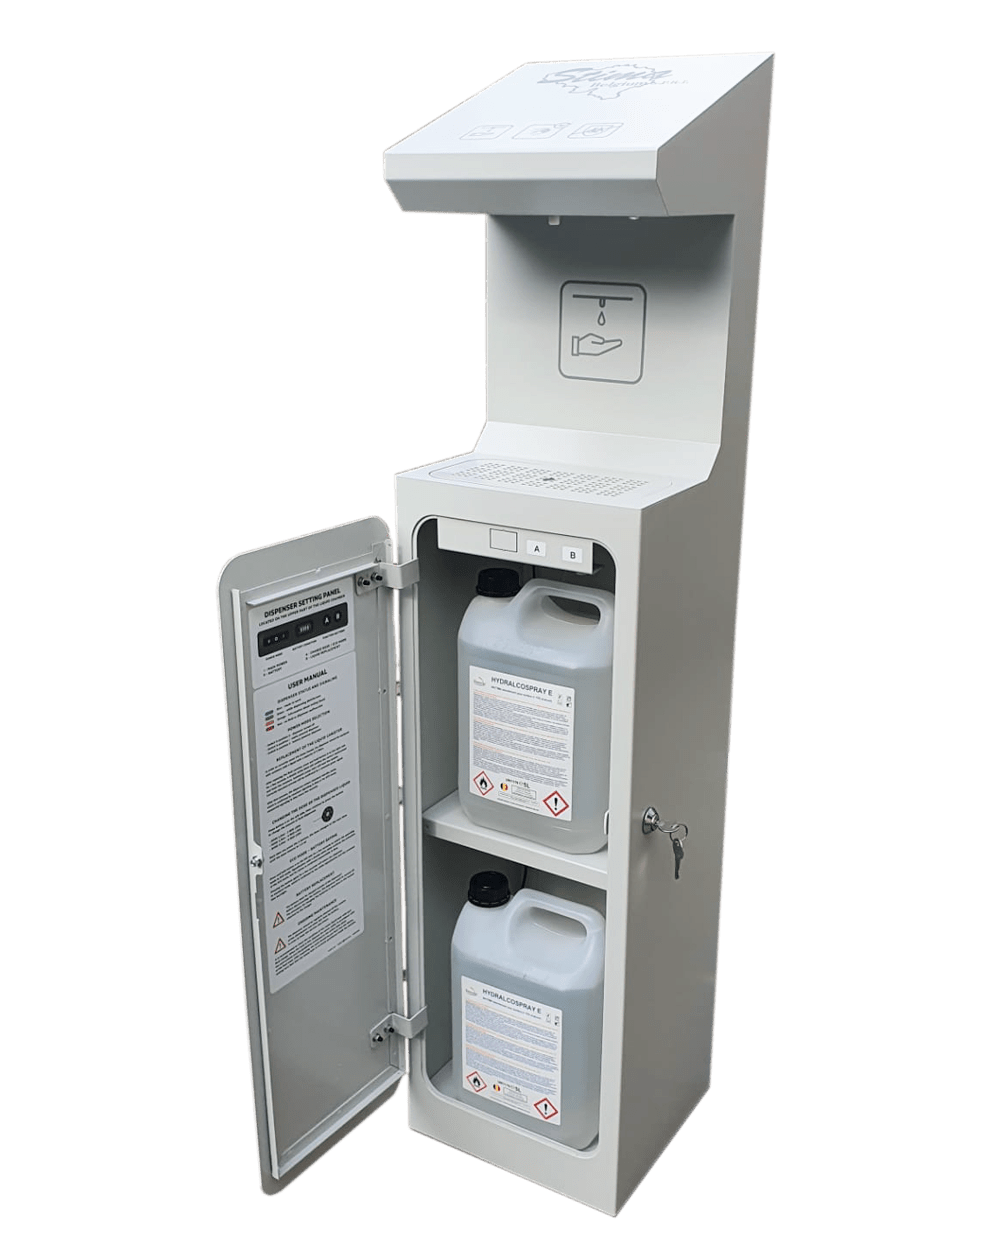 Hygienic Tower Automatic – Distributeur de gel hydroalcolique. • Capacité 5l + 5l • Réservoir anti-gouttes de 2l intégré • Eco-Mode • Fonctionne sur secteur ou sur batterie • Réglage de la quantité de liquide